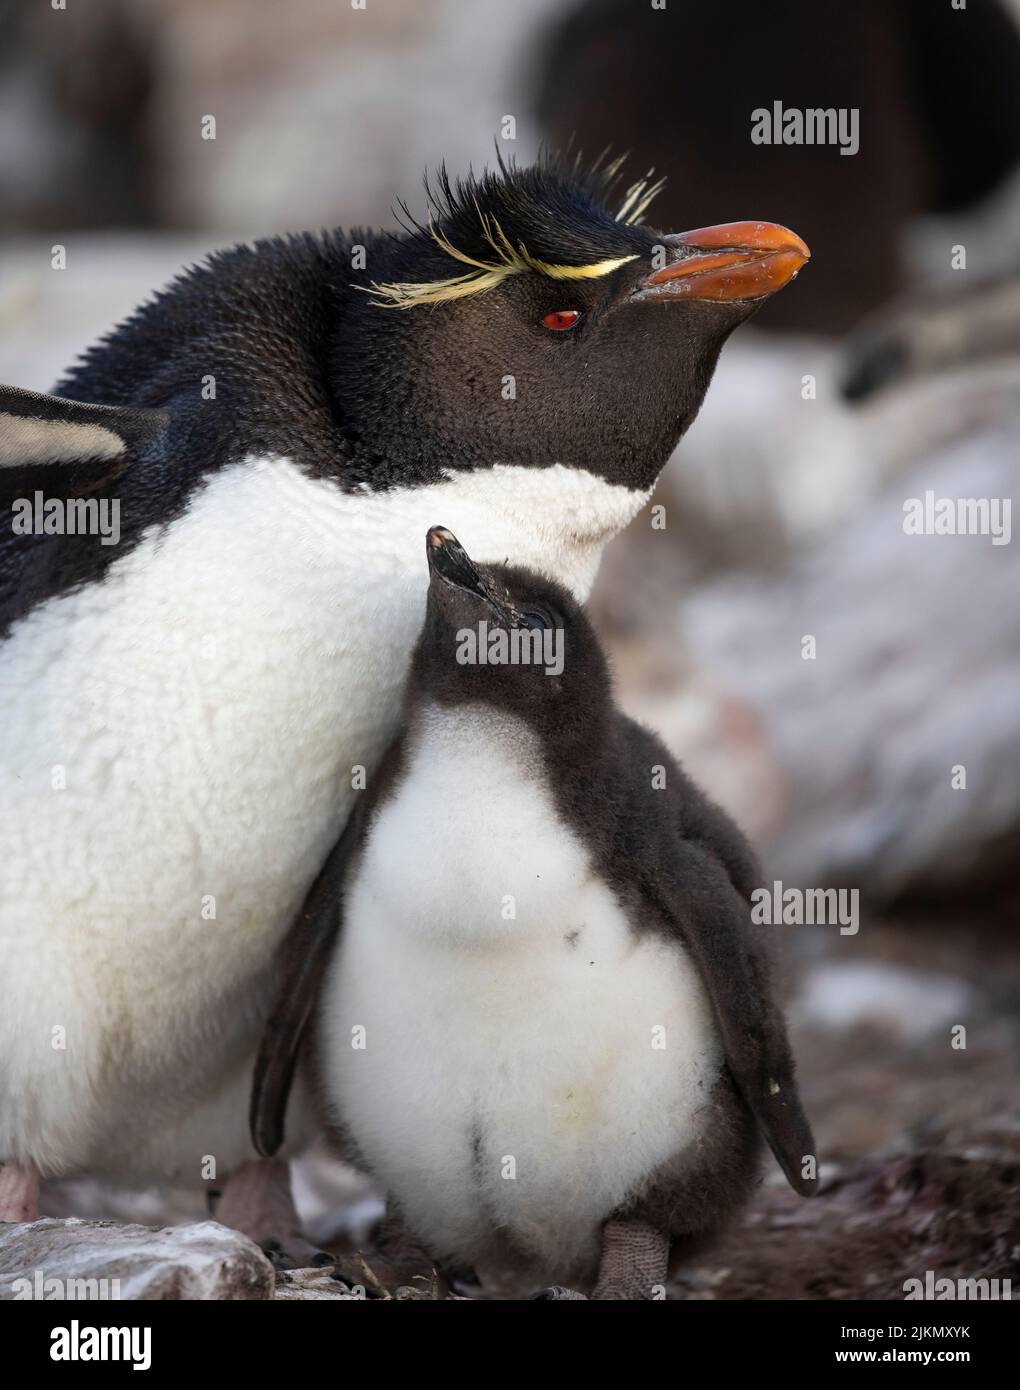 Le pingouin du sud (Eudyptes chrysocome) est un pingouin à crête fougueux. Image prise dans les îles Falkland Banque D'Images